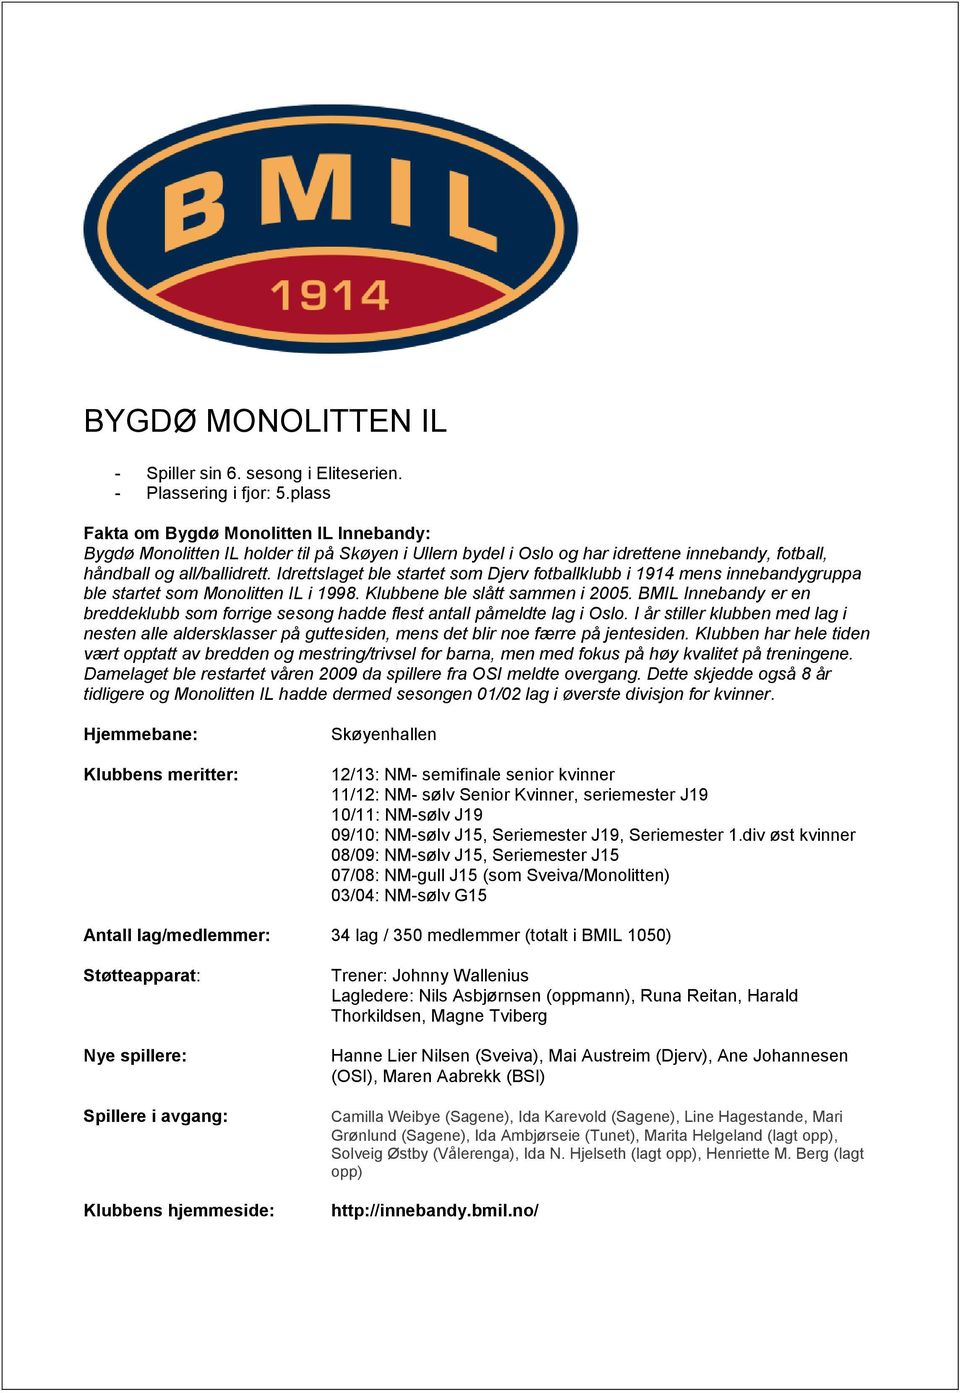 Idrettslaget ble startet som Djerv fotballklubb i 1914 mens innebandygruppa ble startet som Monolitten IL i 1998. Klubbene ble slått sammen i 2005.